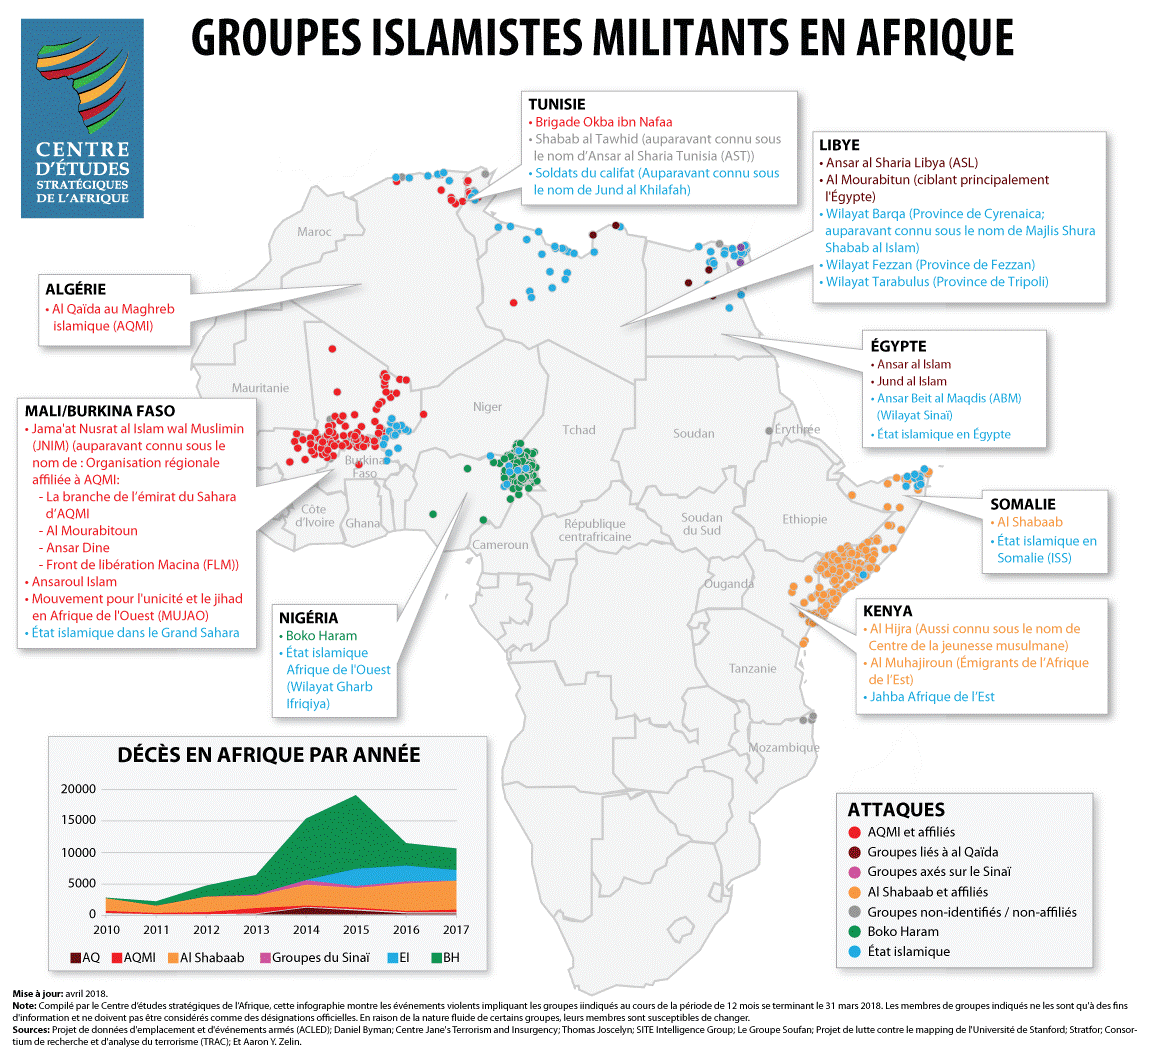 Groupes islamistes militants en Afrique - avril 2018